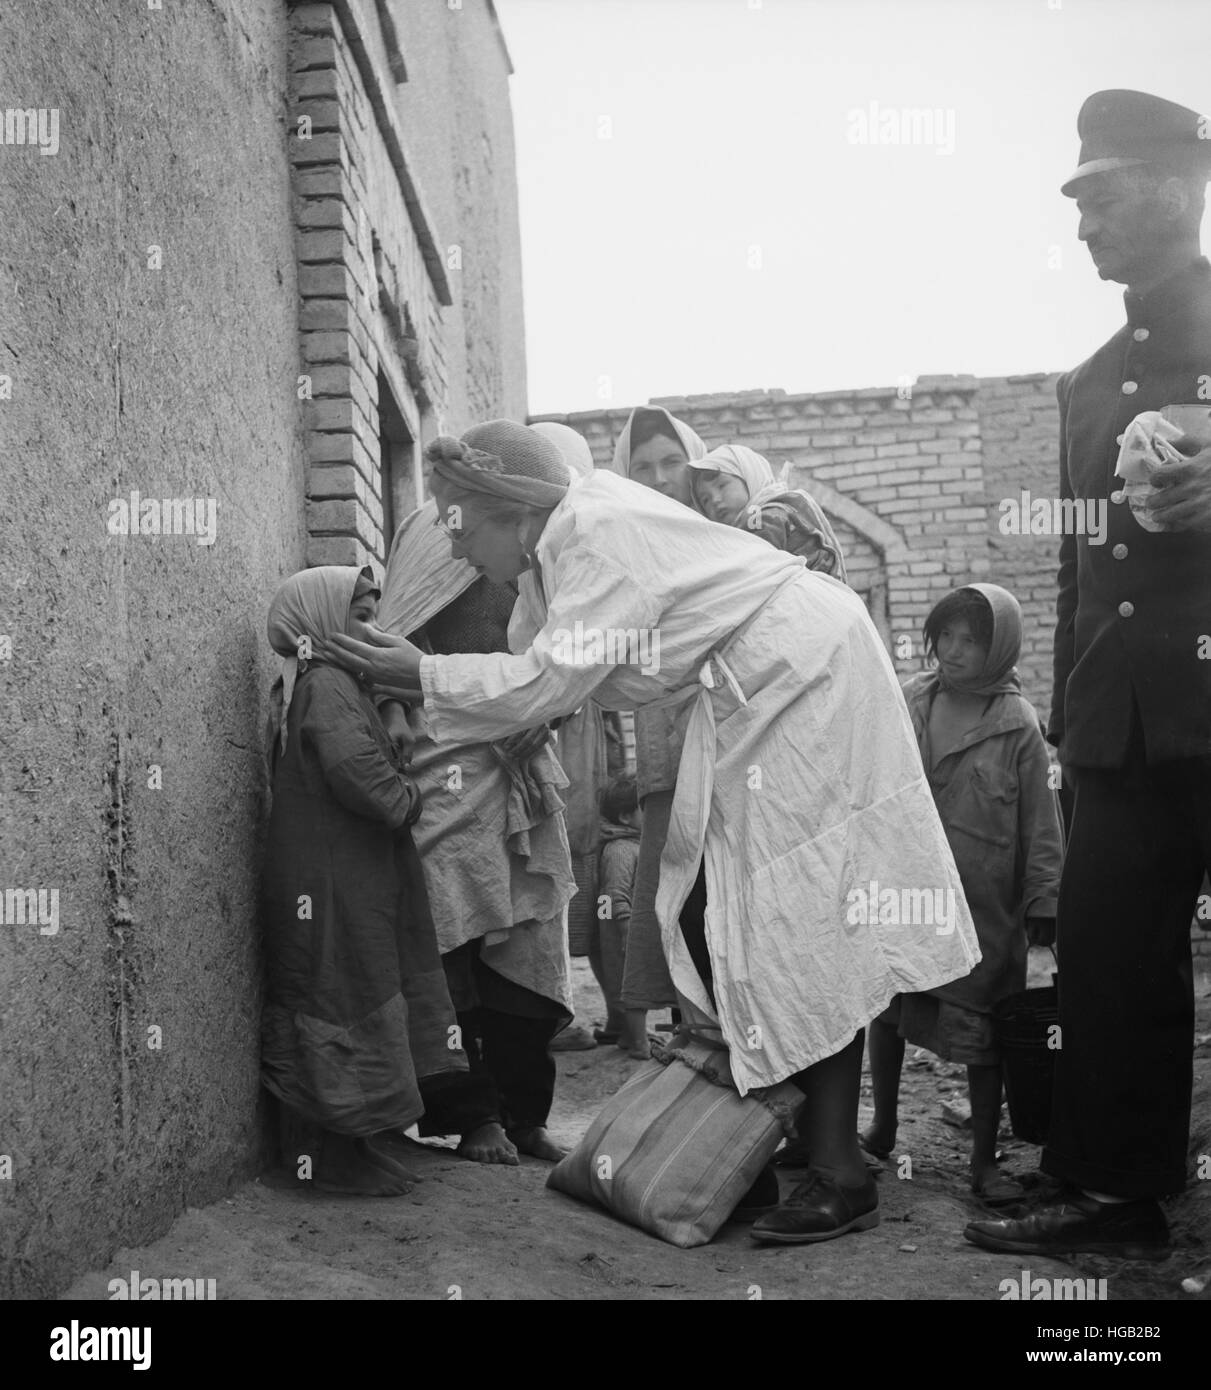 Une femme en distribuant de la nourriture et des fournitures médicales dans la section les plus pauvres de la ville, 1943. Banque D'Images